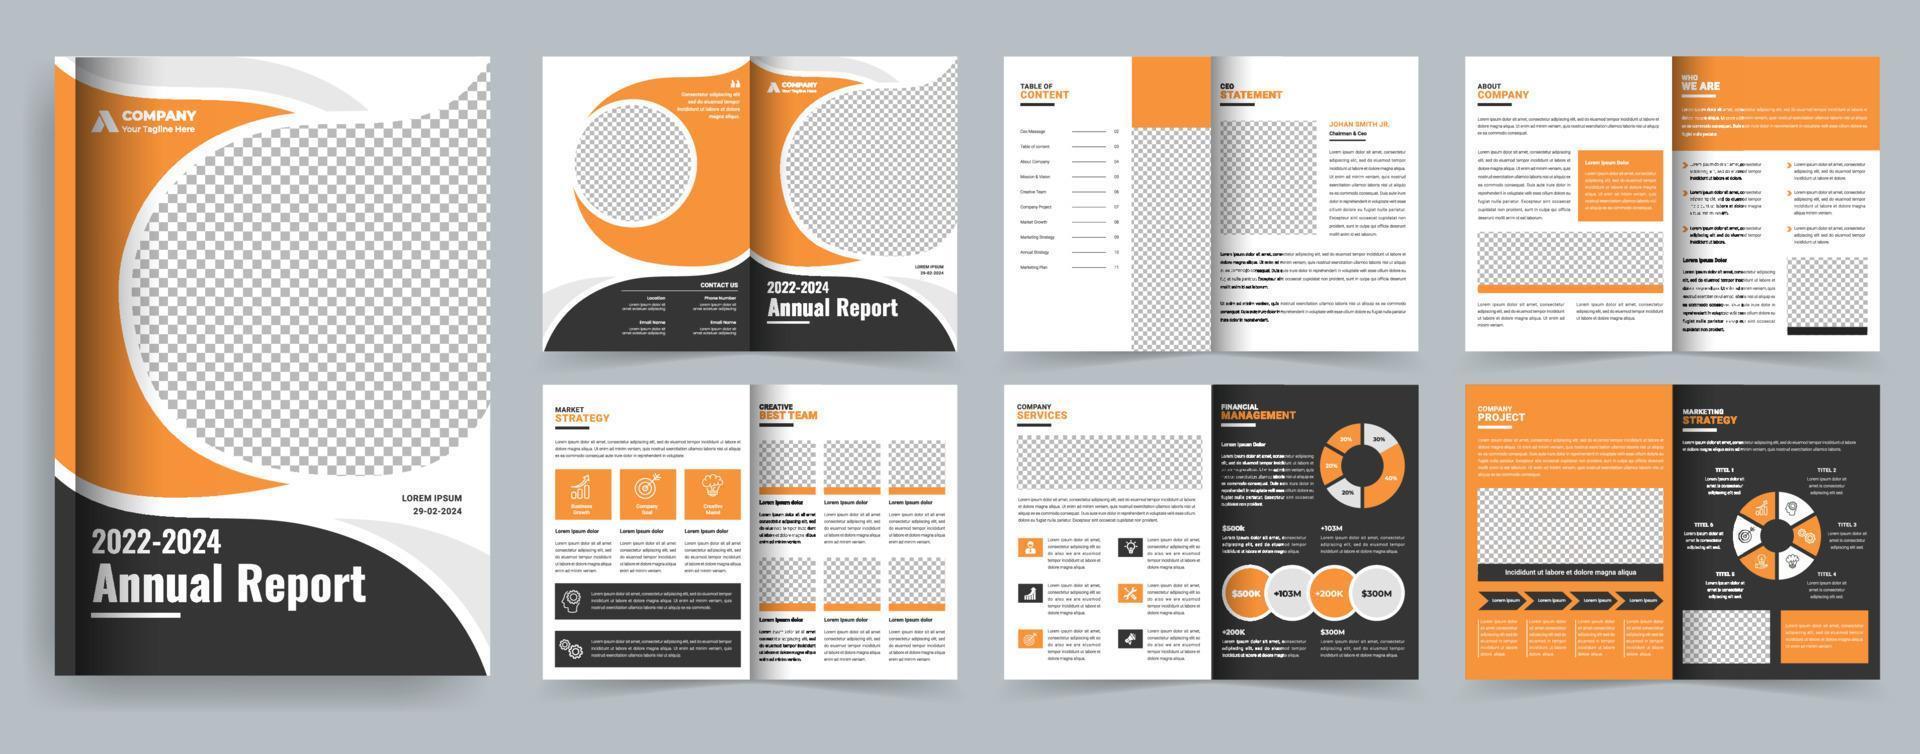 modelo de folheto de negócios amarelo e relatório anual ou perfil da empresa ou modelo de design de layout de proposta de projeto vetor